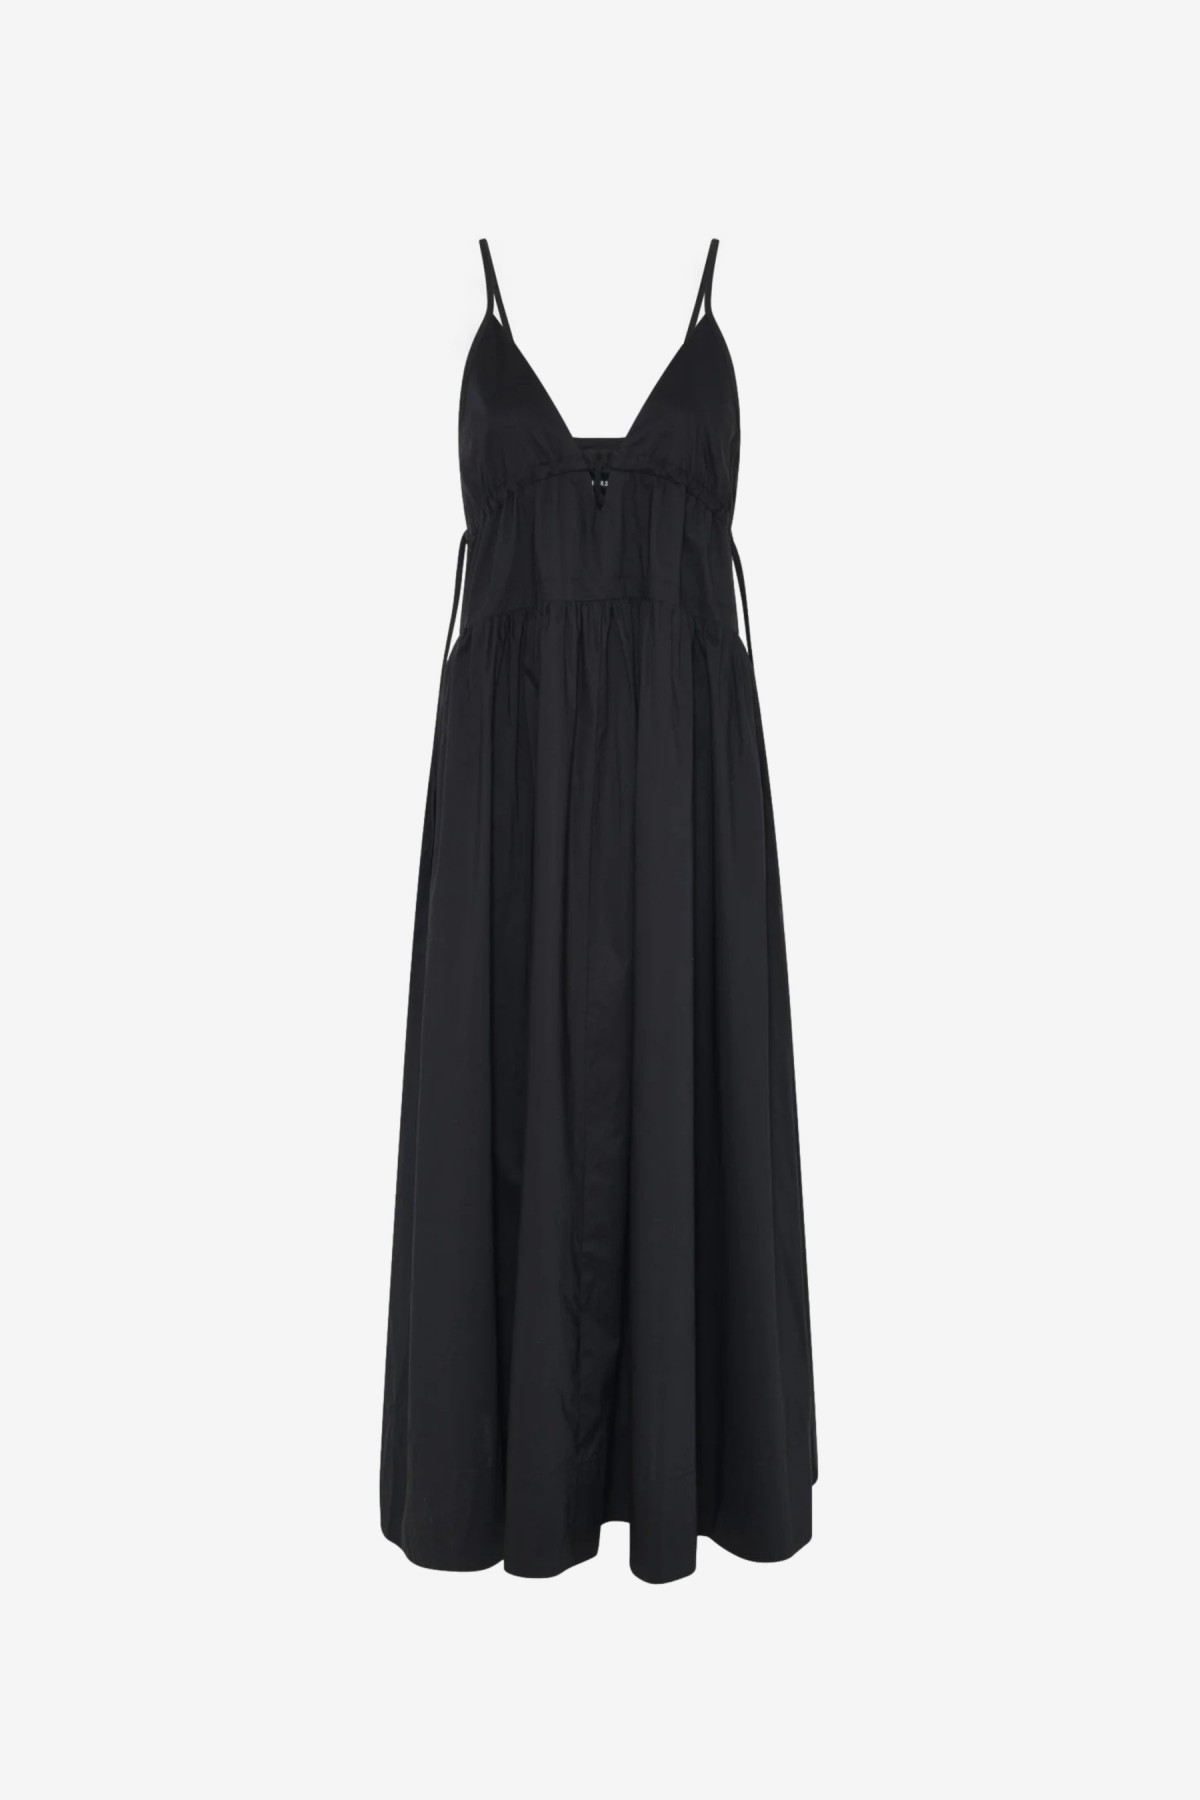 Herskind Miranda Dress in Black